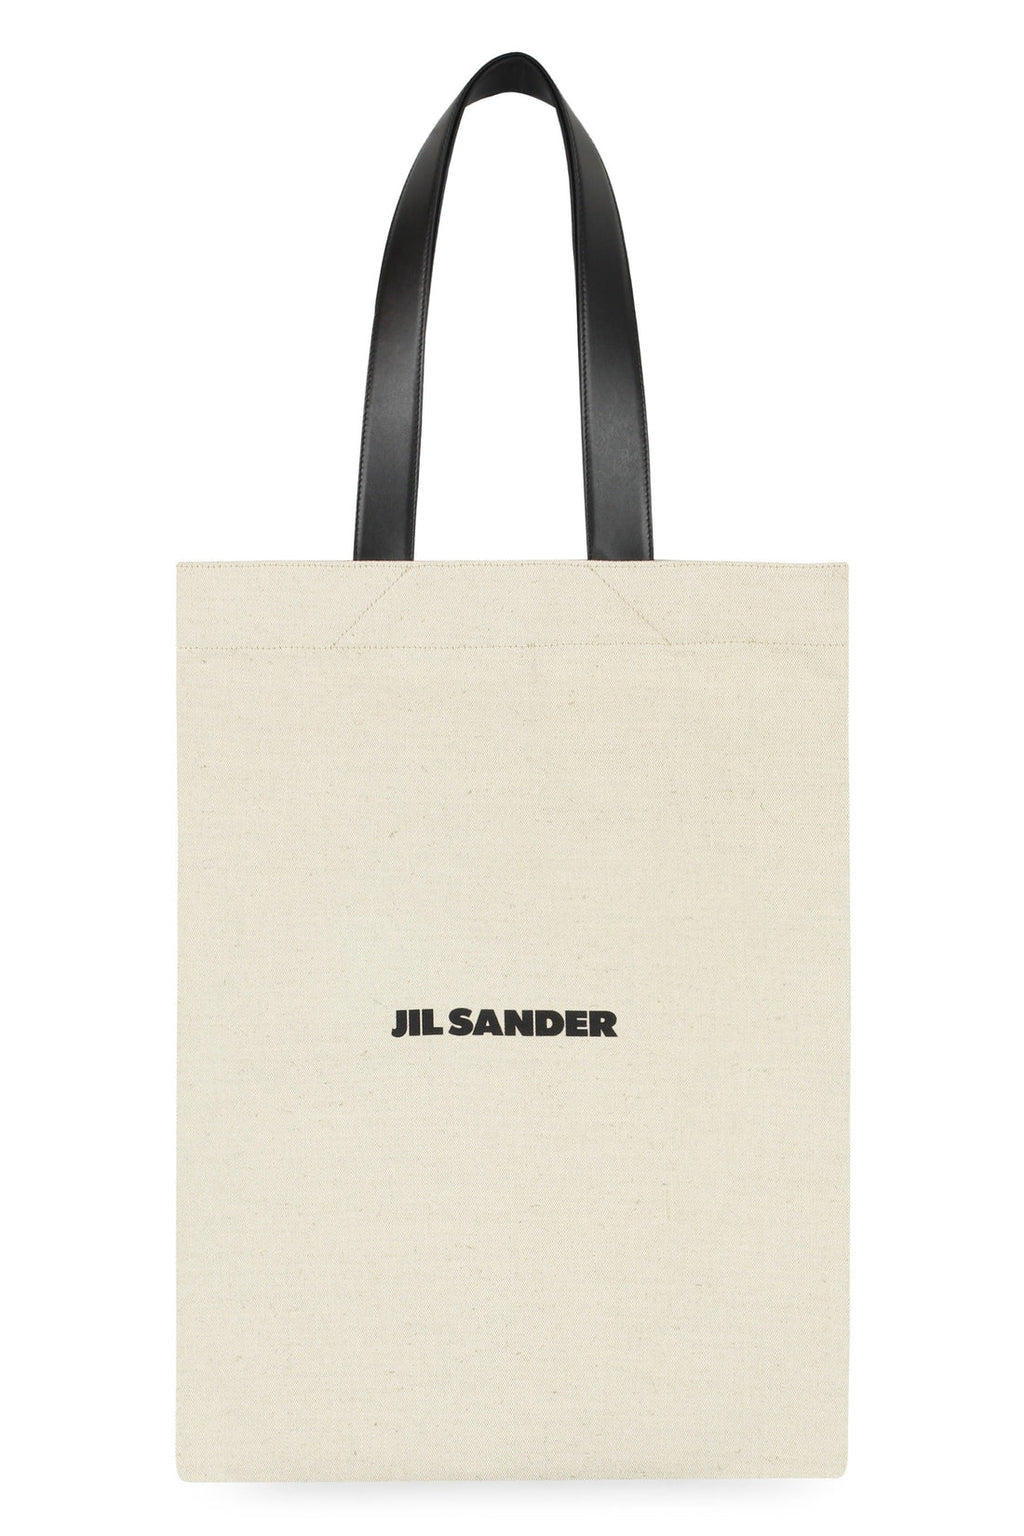 Jil Sander-OUTLET-SALE-Canvas tote bag-ARCHIVIST